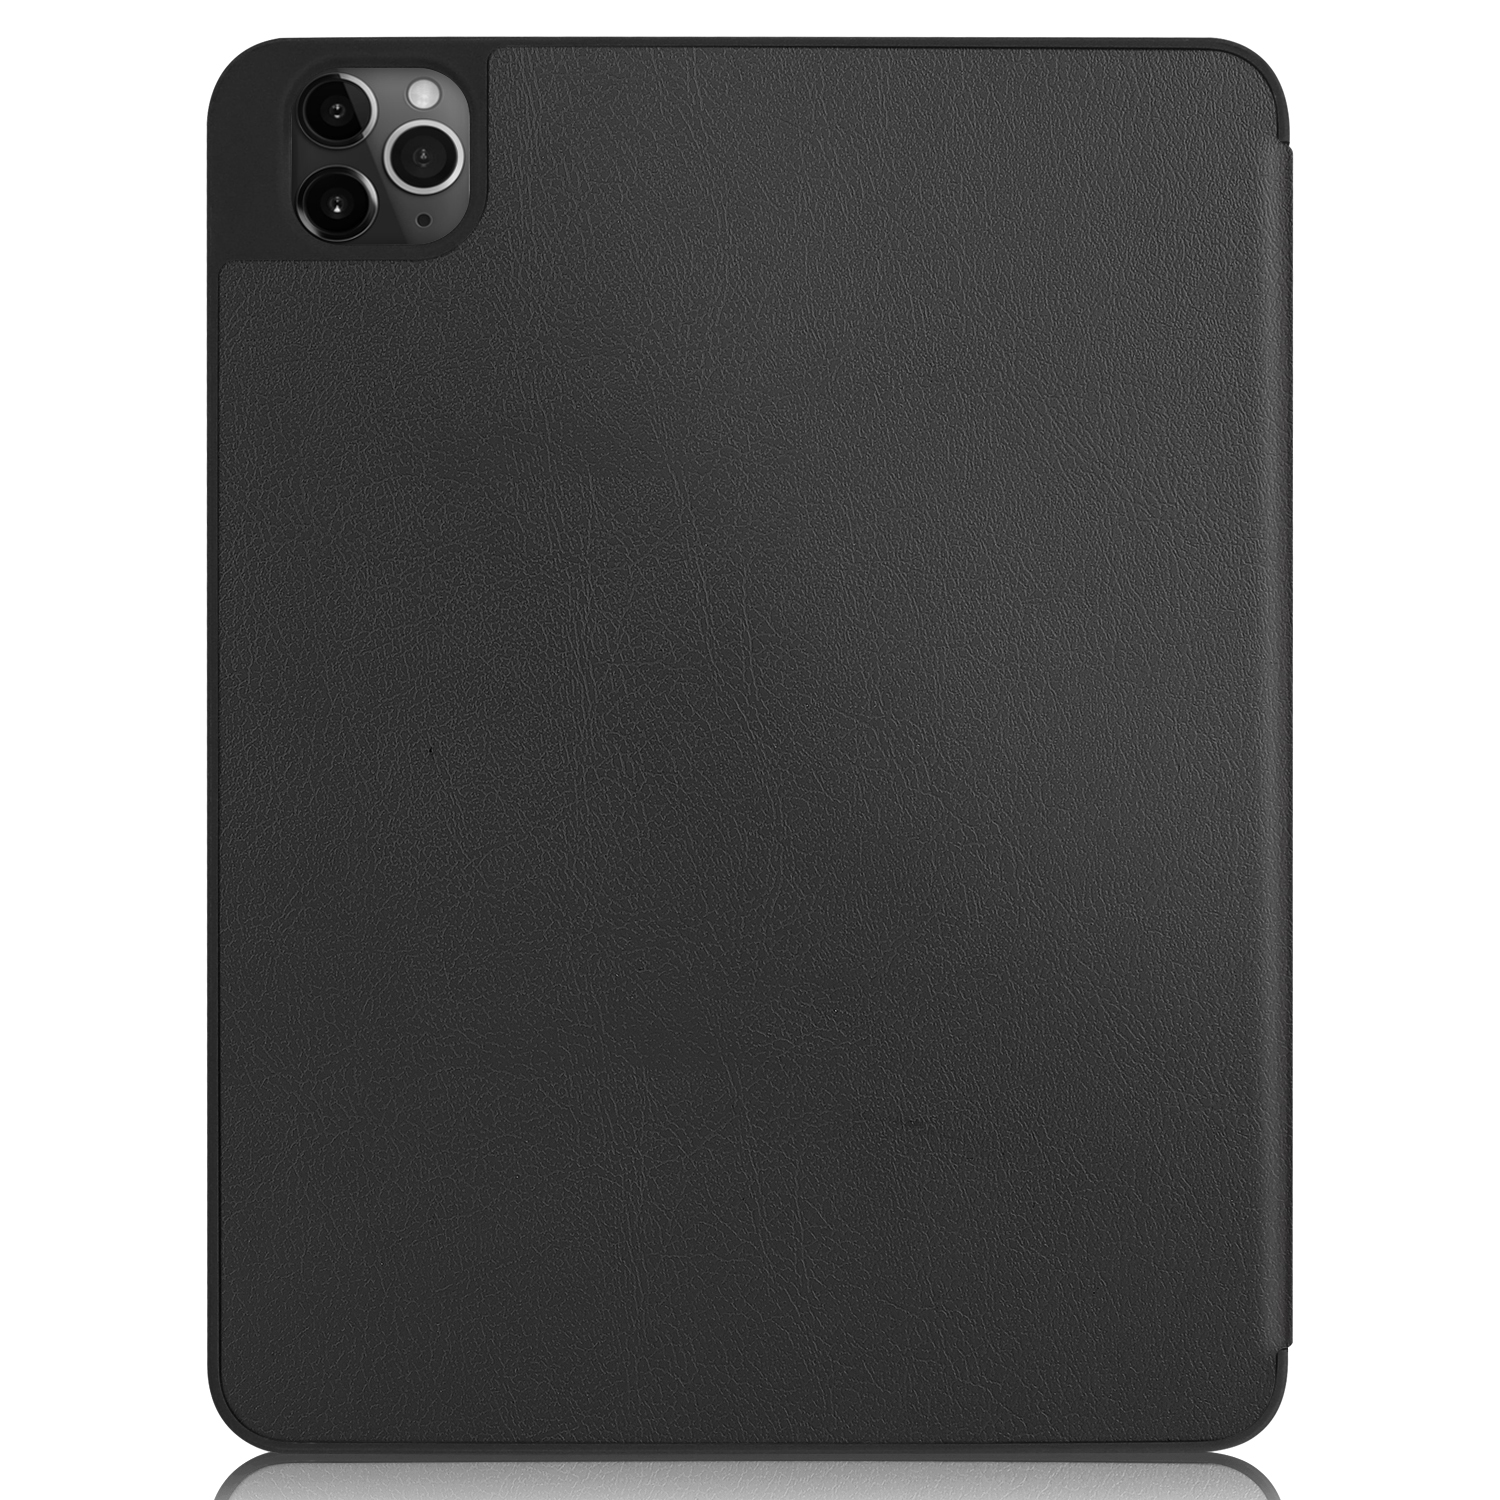 LOBWERK Hülle Schutzhülle Bookcover iPad Kunstleder, Zoll 11 Pro Schwarz 2020 Apple für